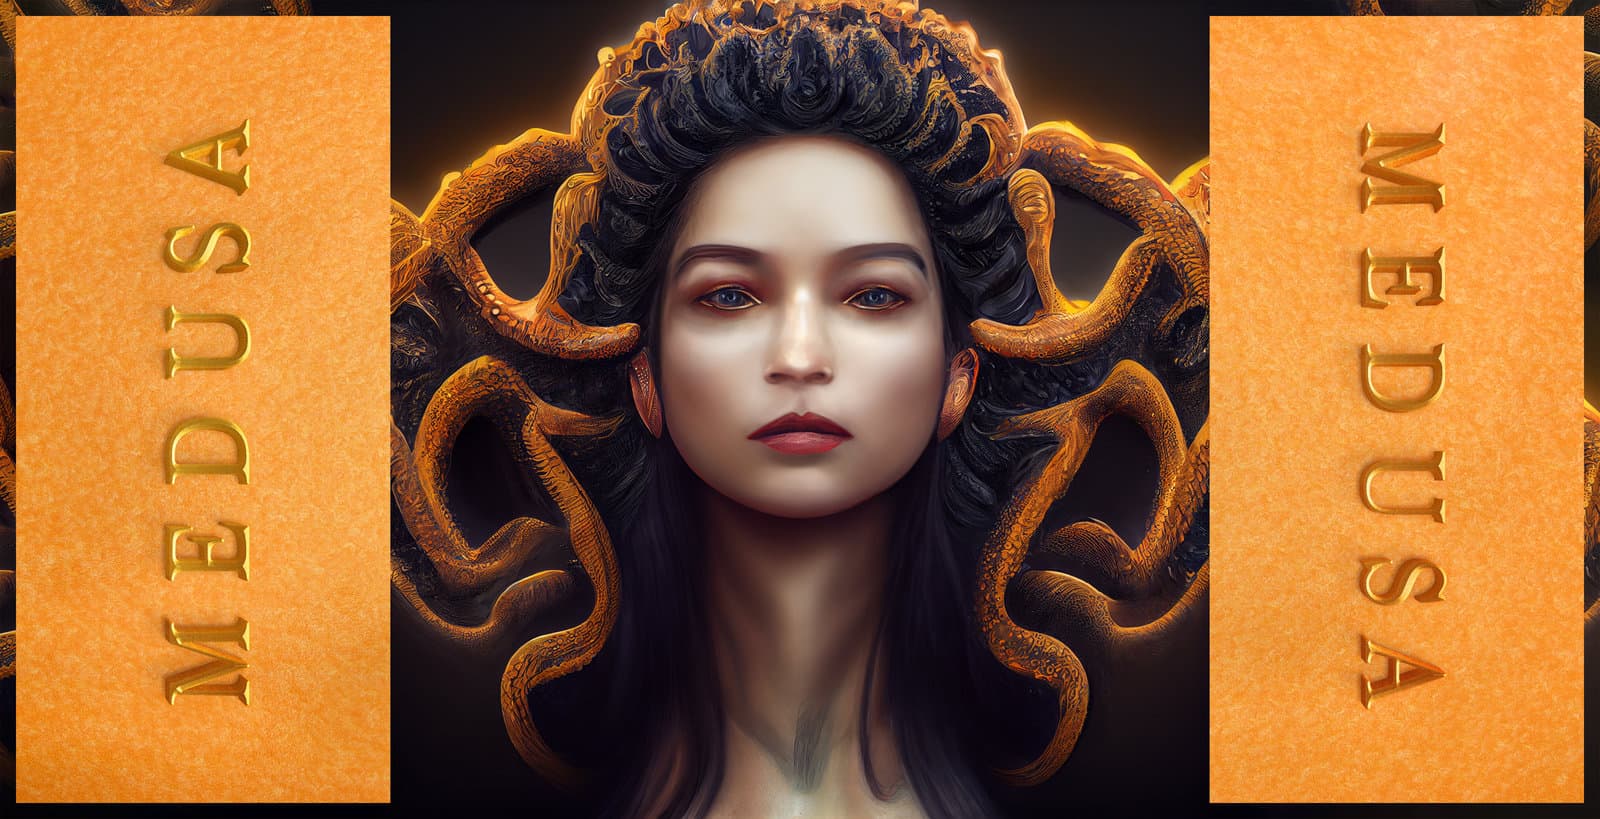 Medusa the Gorgon